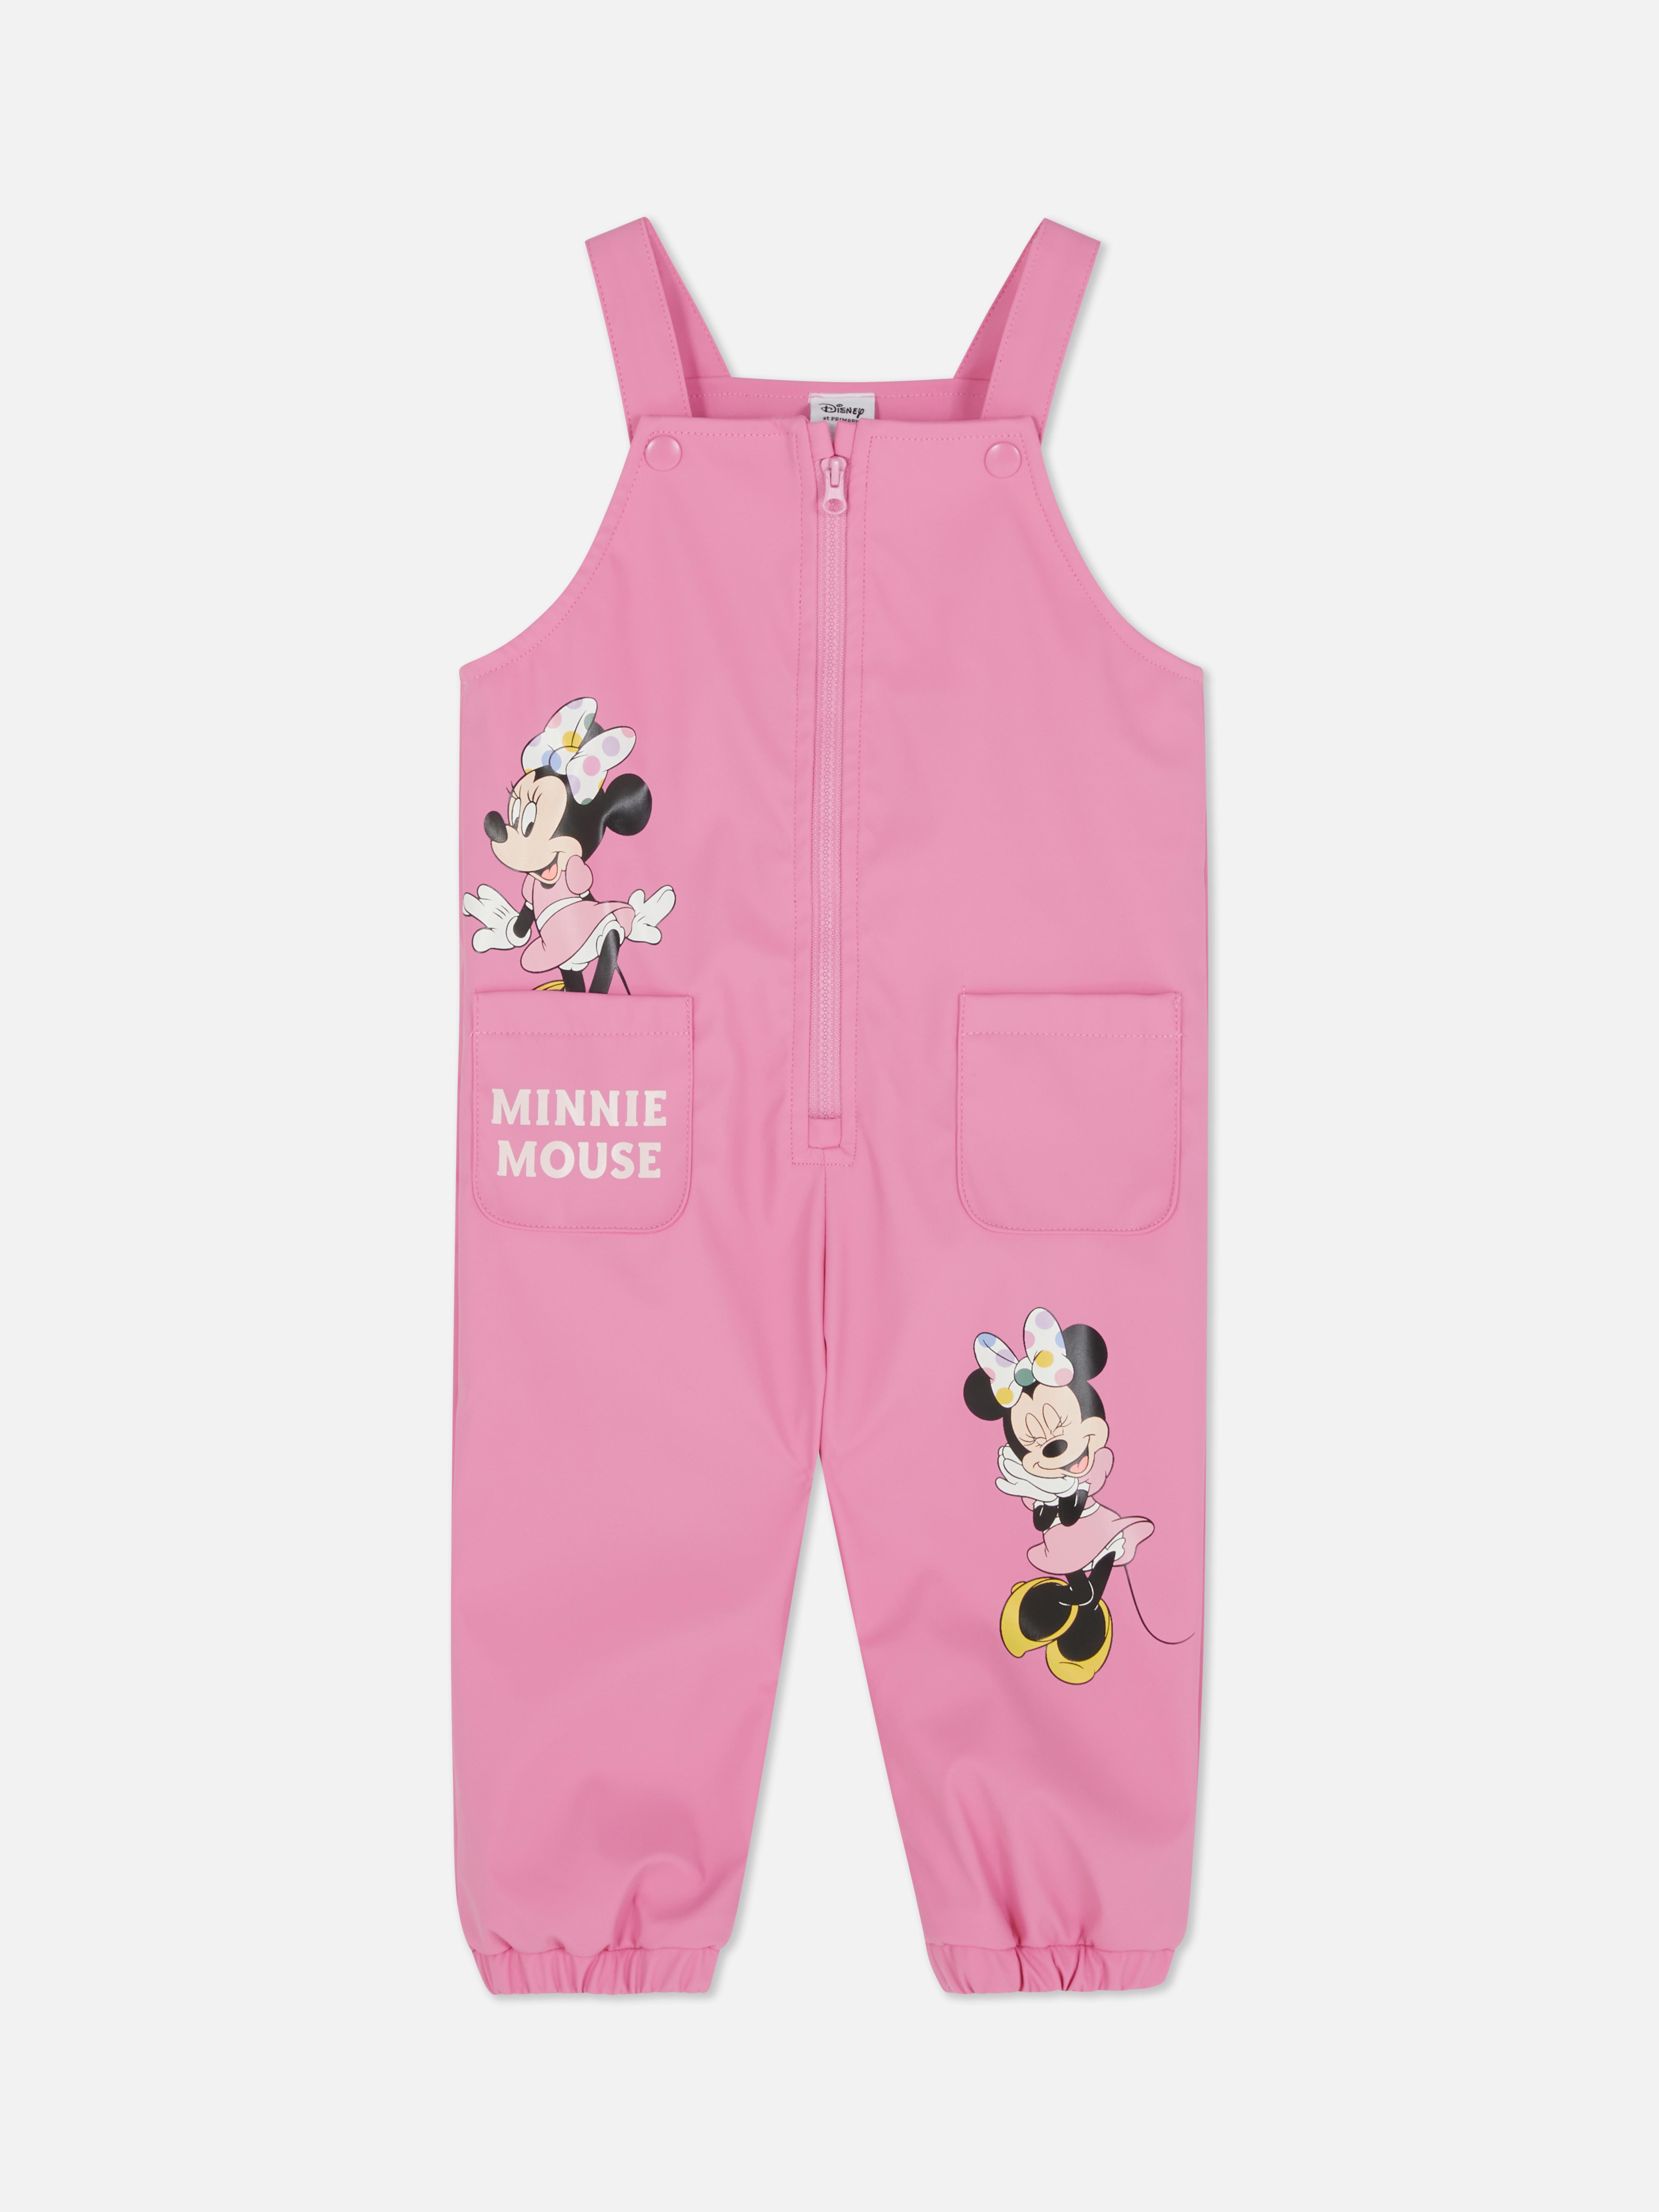 Peto de Minnie Mouse de Disney | Moda para niña | Moda para bebés y recién nacidos | Ropa para niños | Todos los productos Primark | Primark